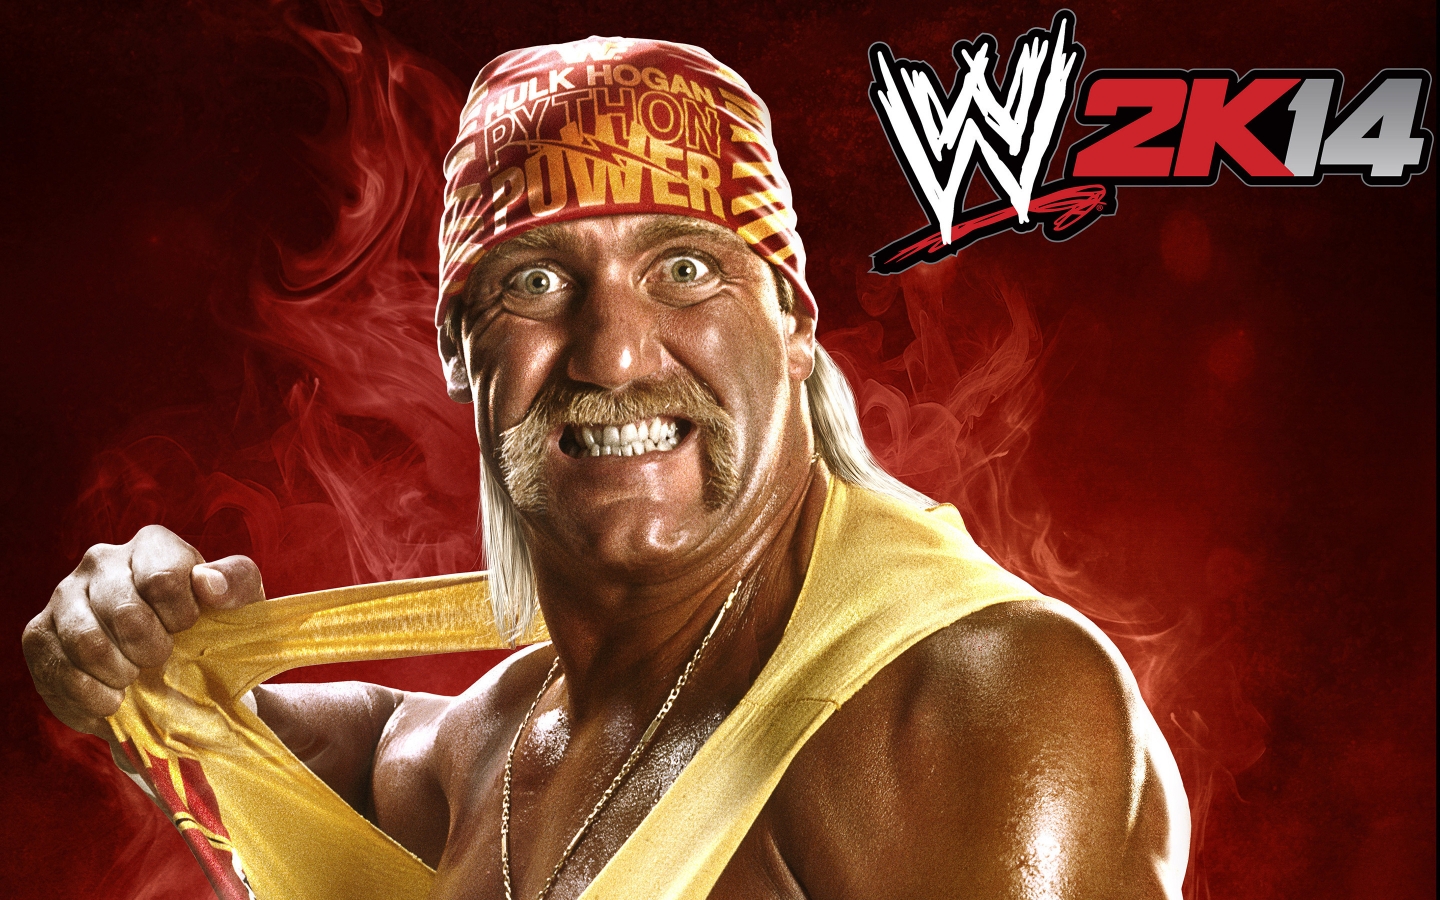 Hulk Hogan WWE2K14 for 1440 x 900 widescreen resolution